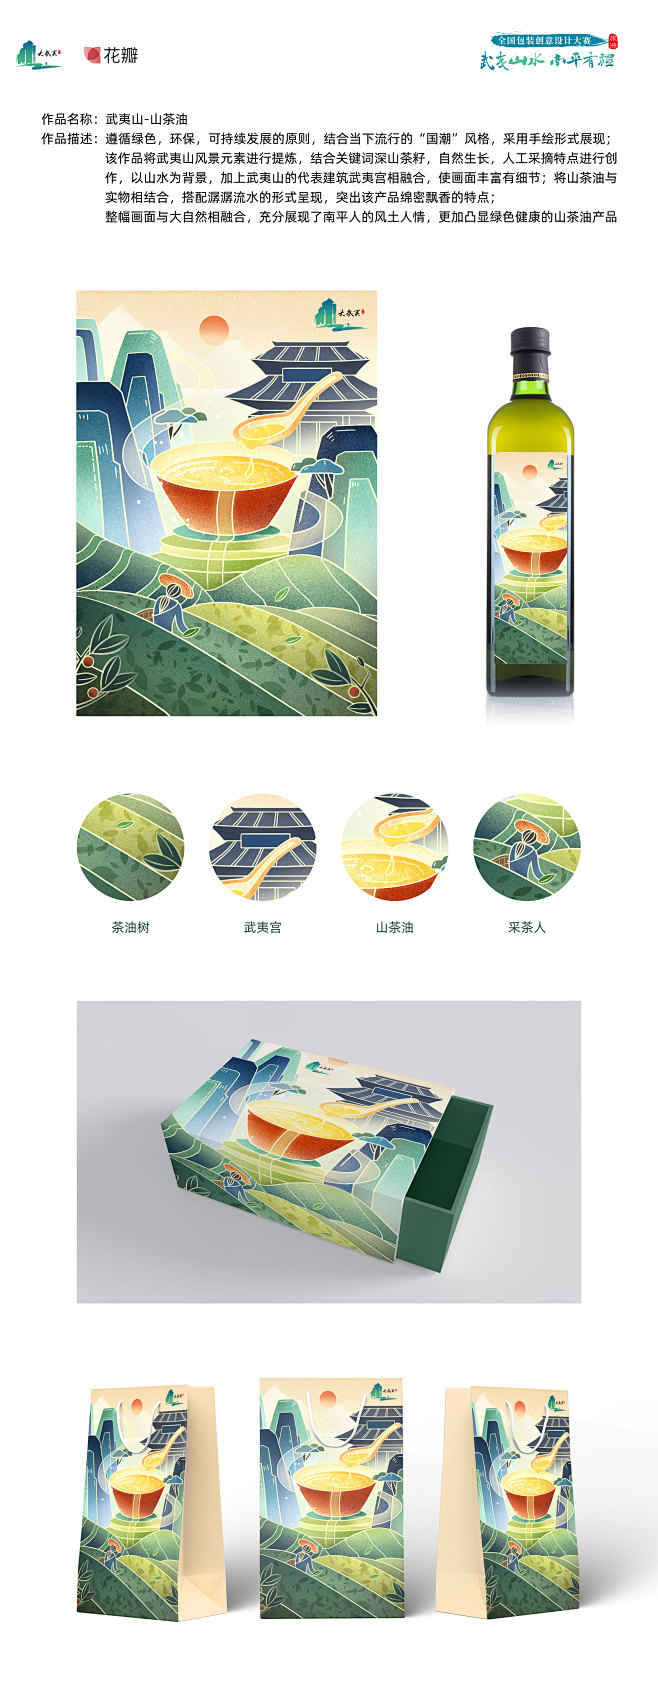 作品名称：武夷山-山茶油
作品描述：遵循...